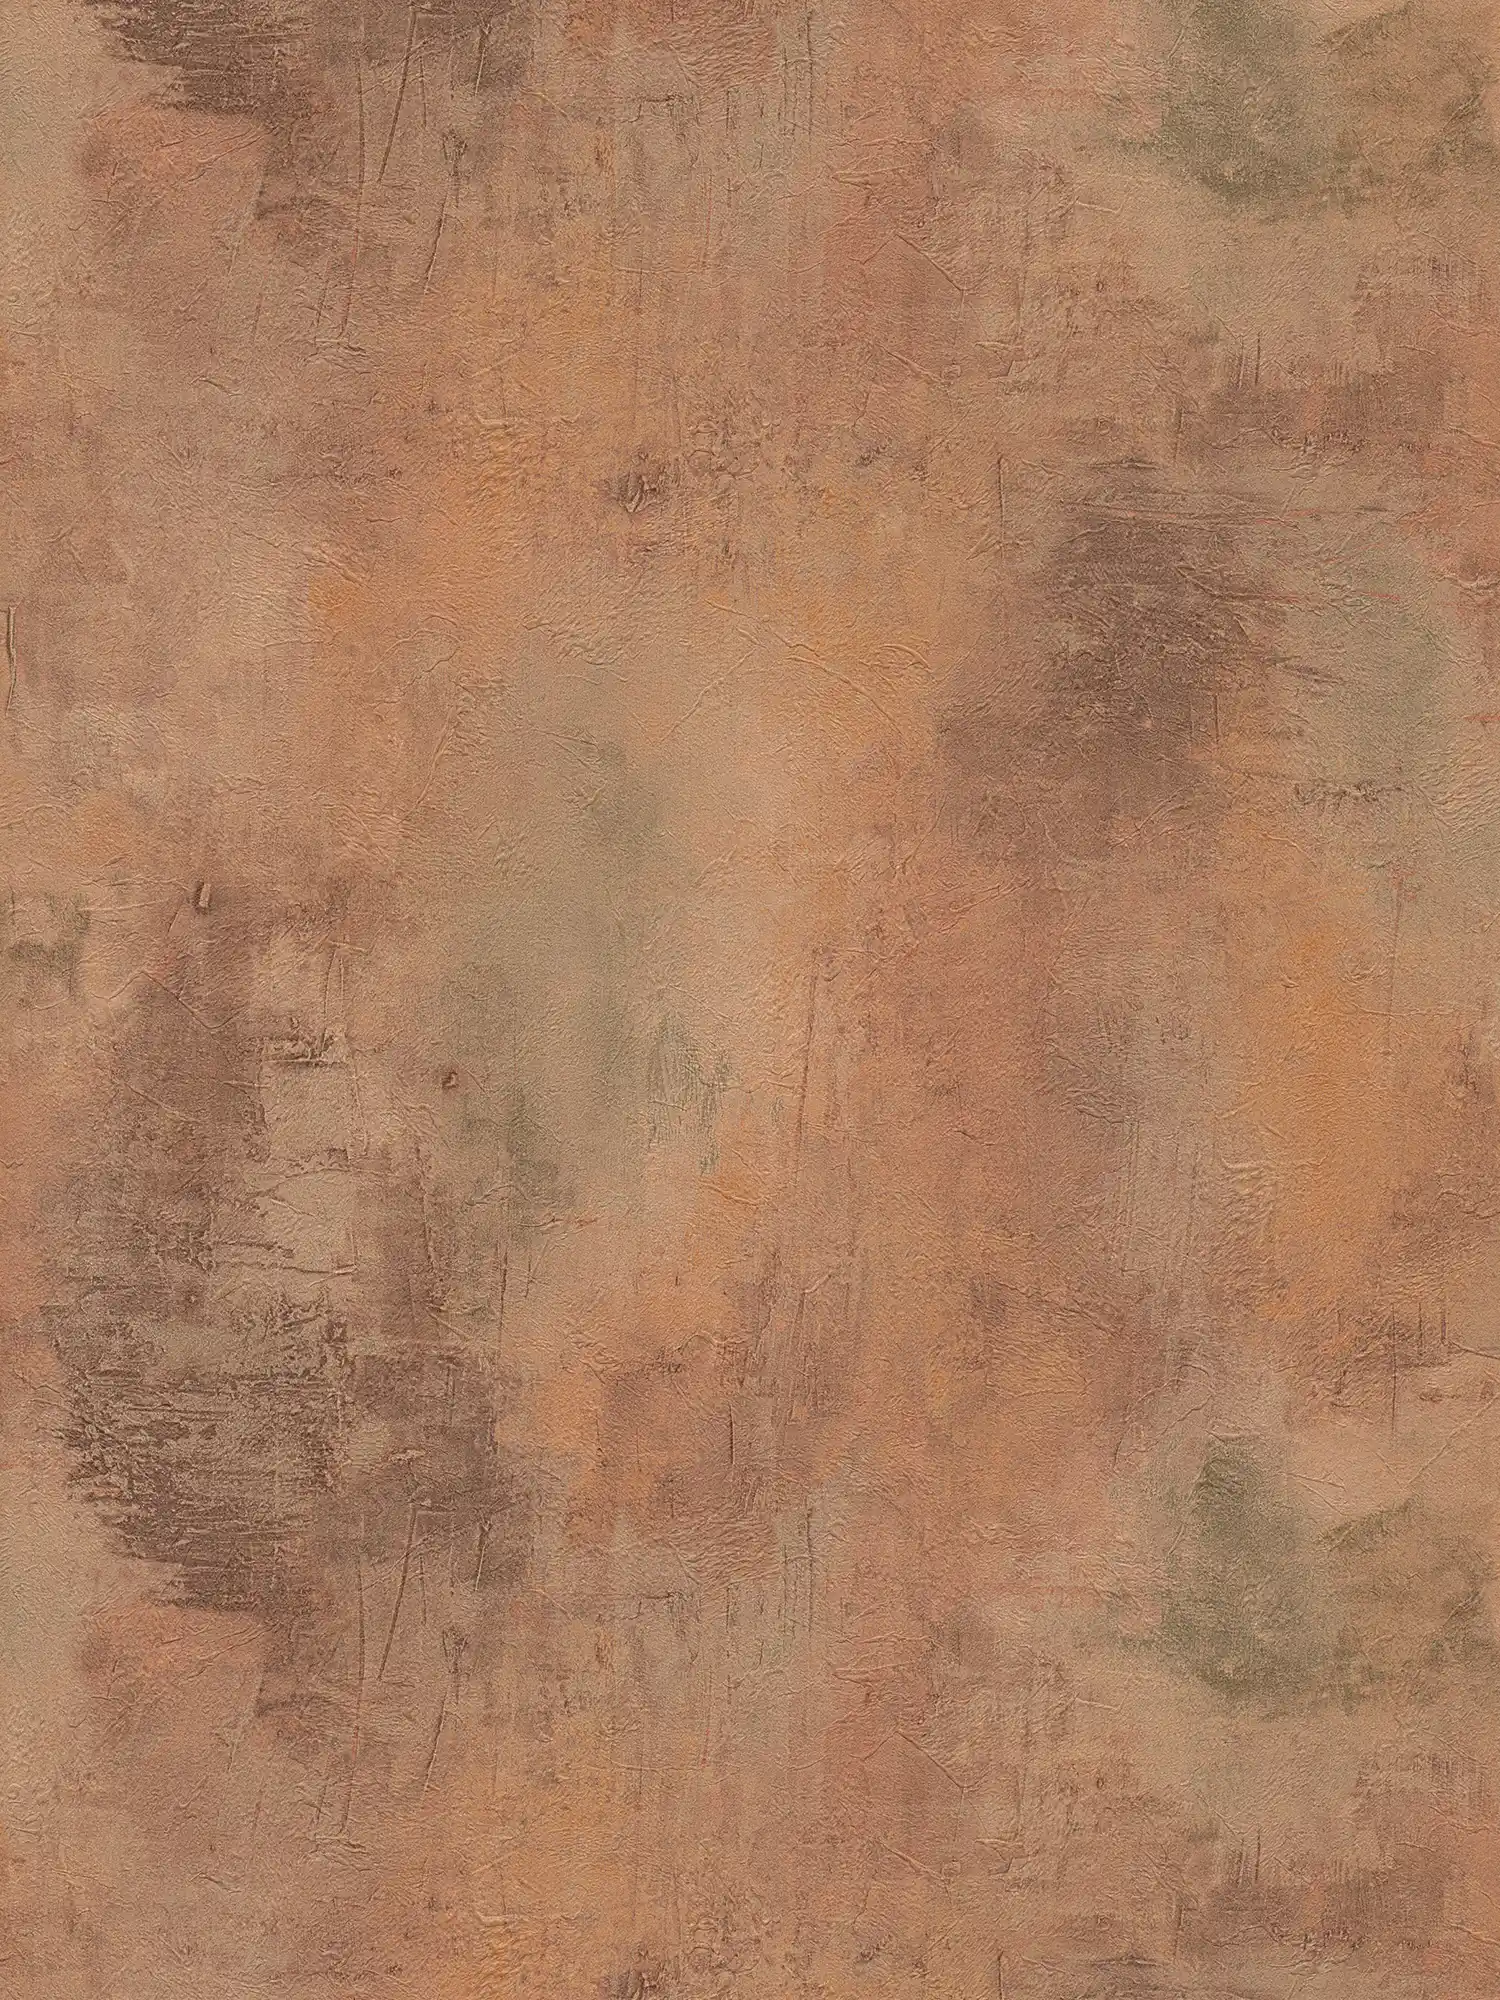 Tapete mit Rost-Muster und Metallic Look – Braun, Orange, Grau
